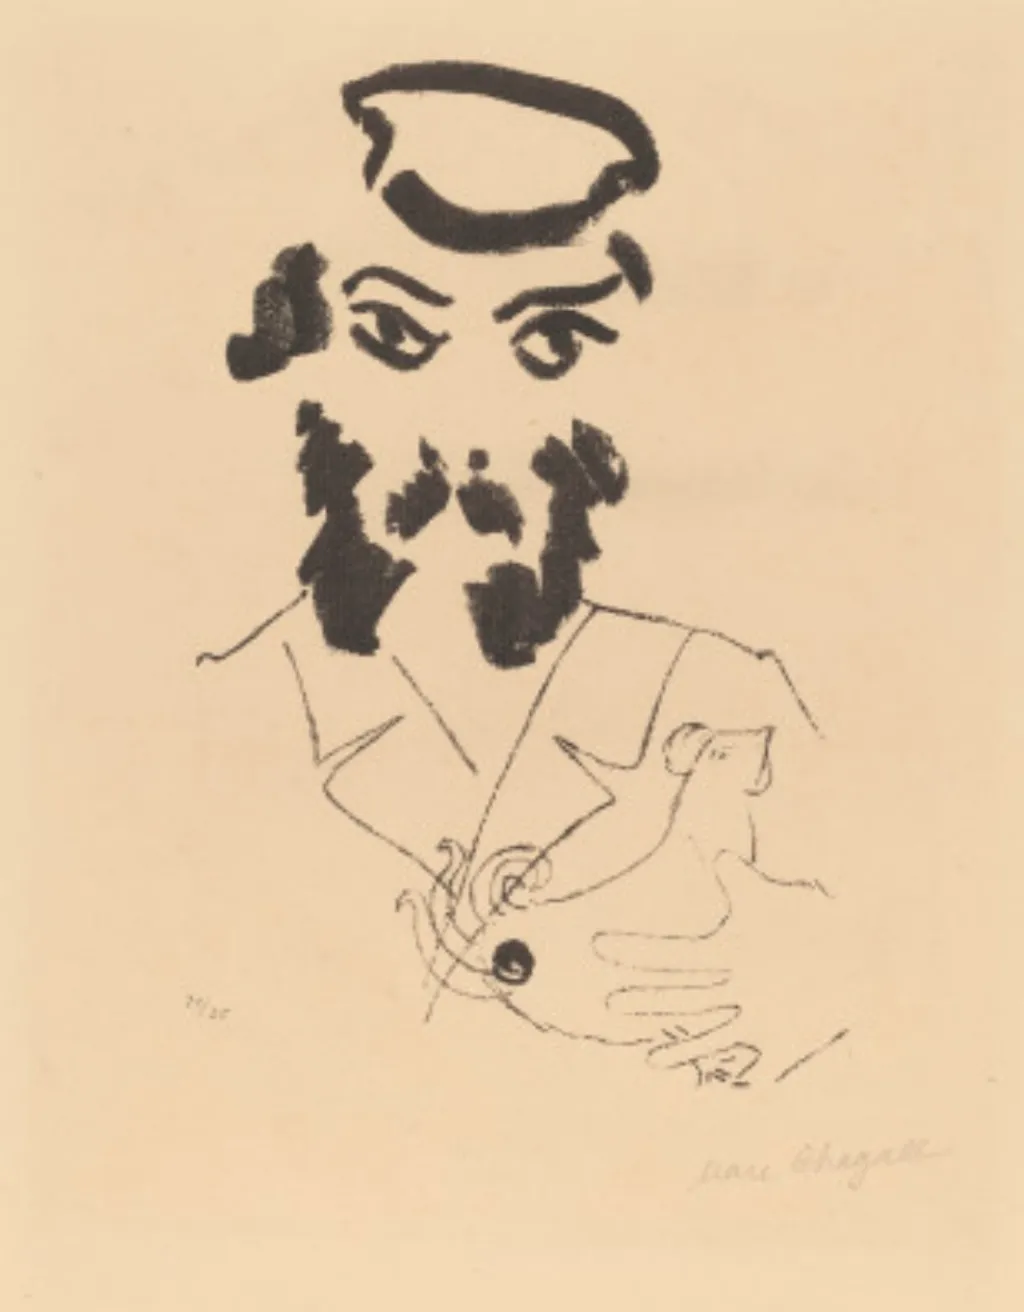 MArc Chagall
náci galéria 